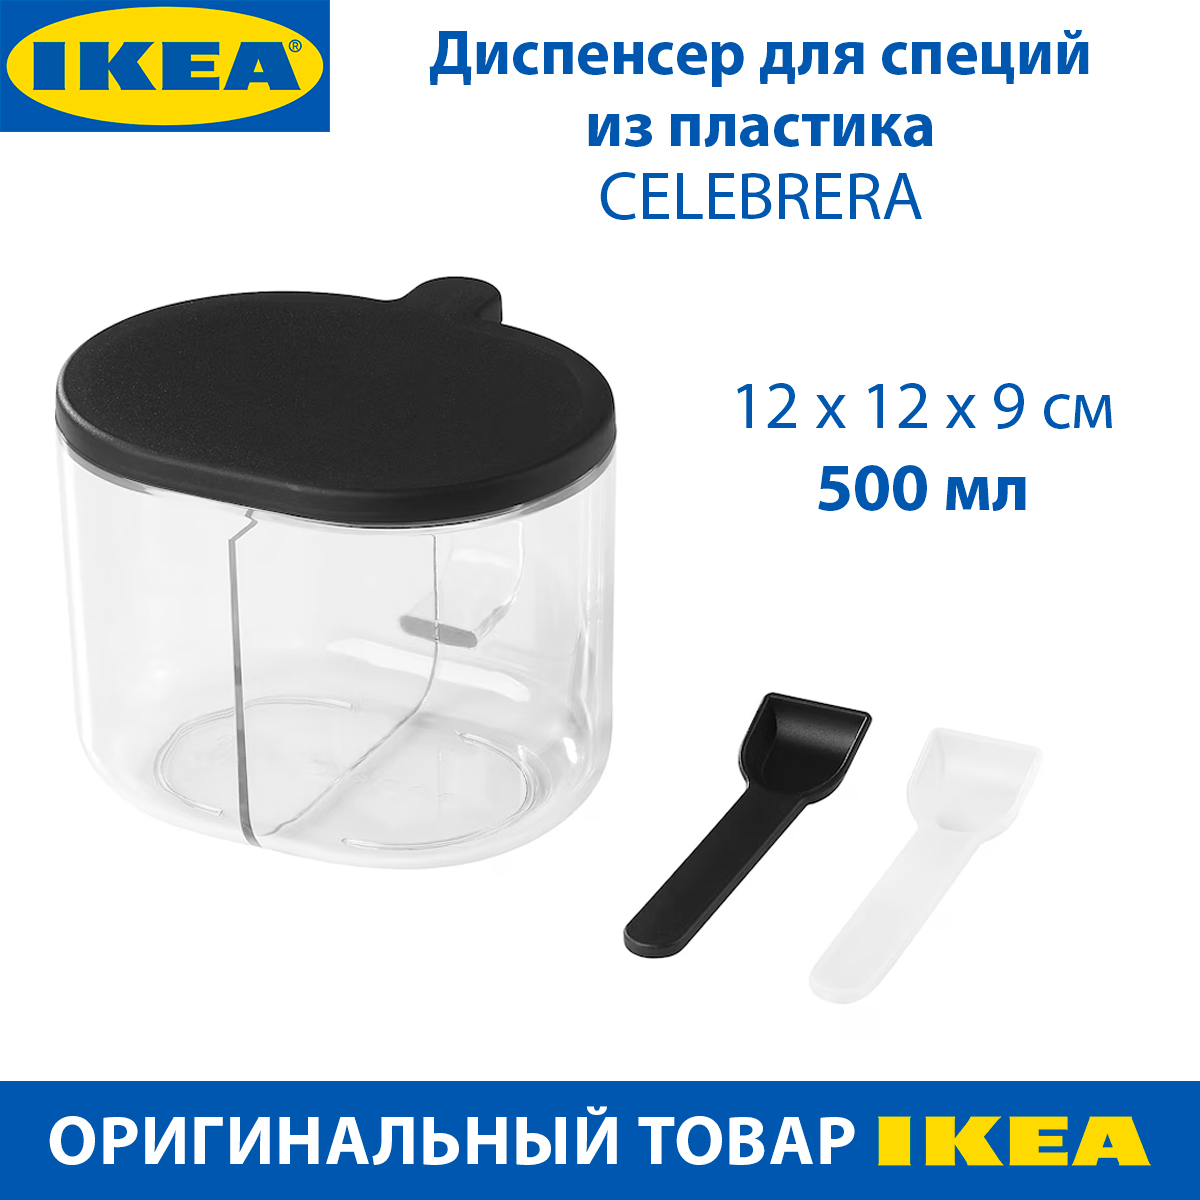 Диспенсер для специй IKEA CELEBRERA пластиковый, с дозатором, 1 шт